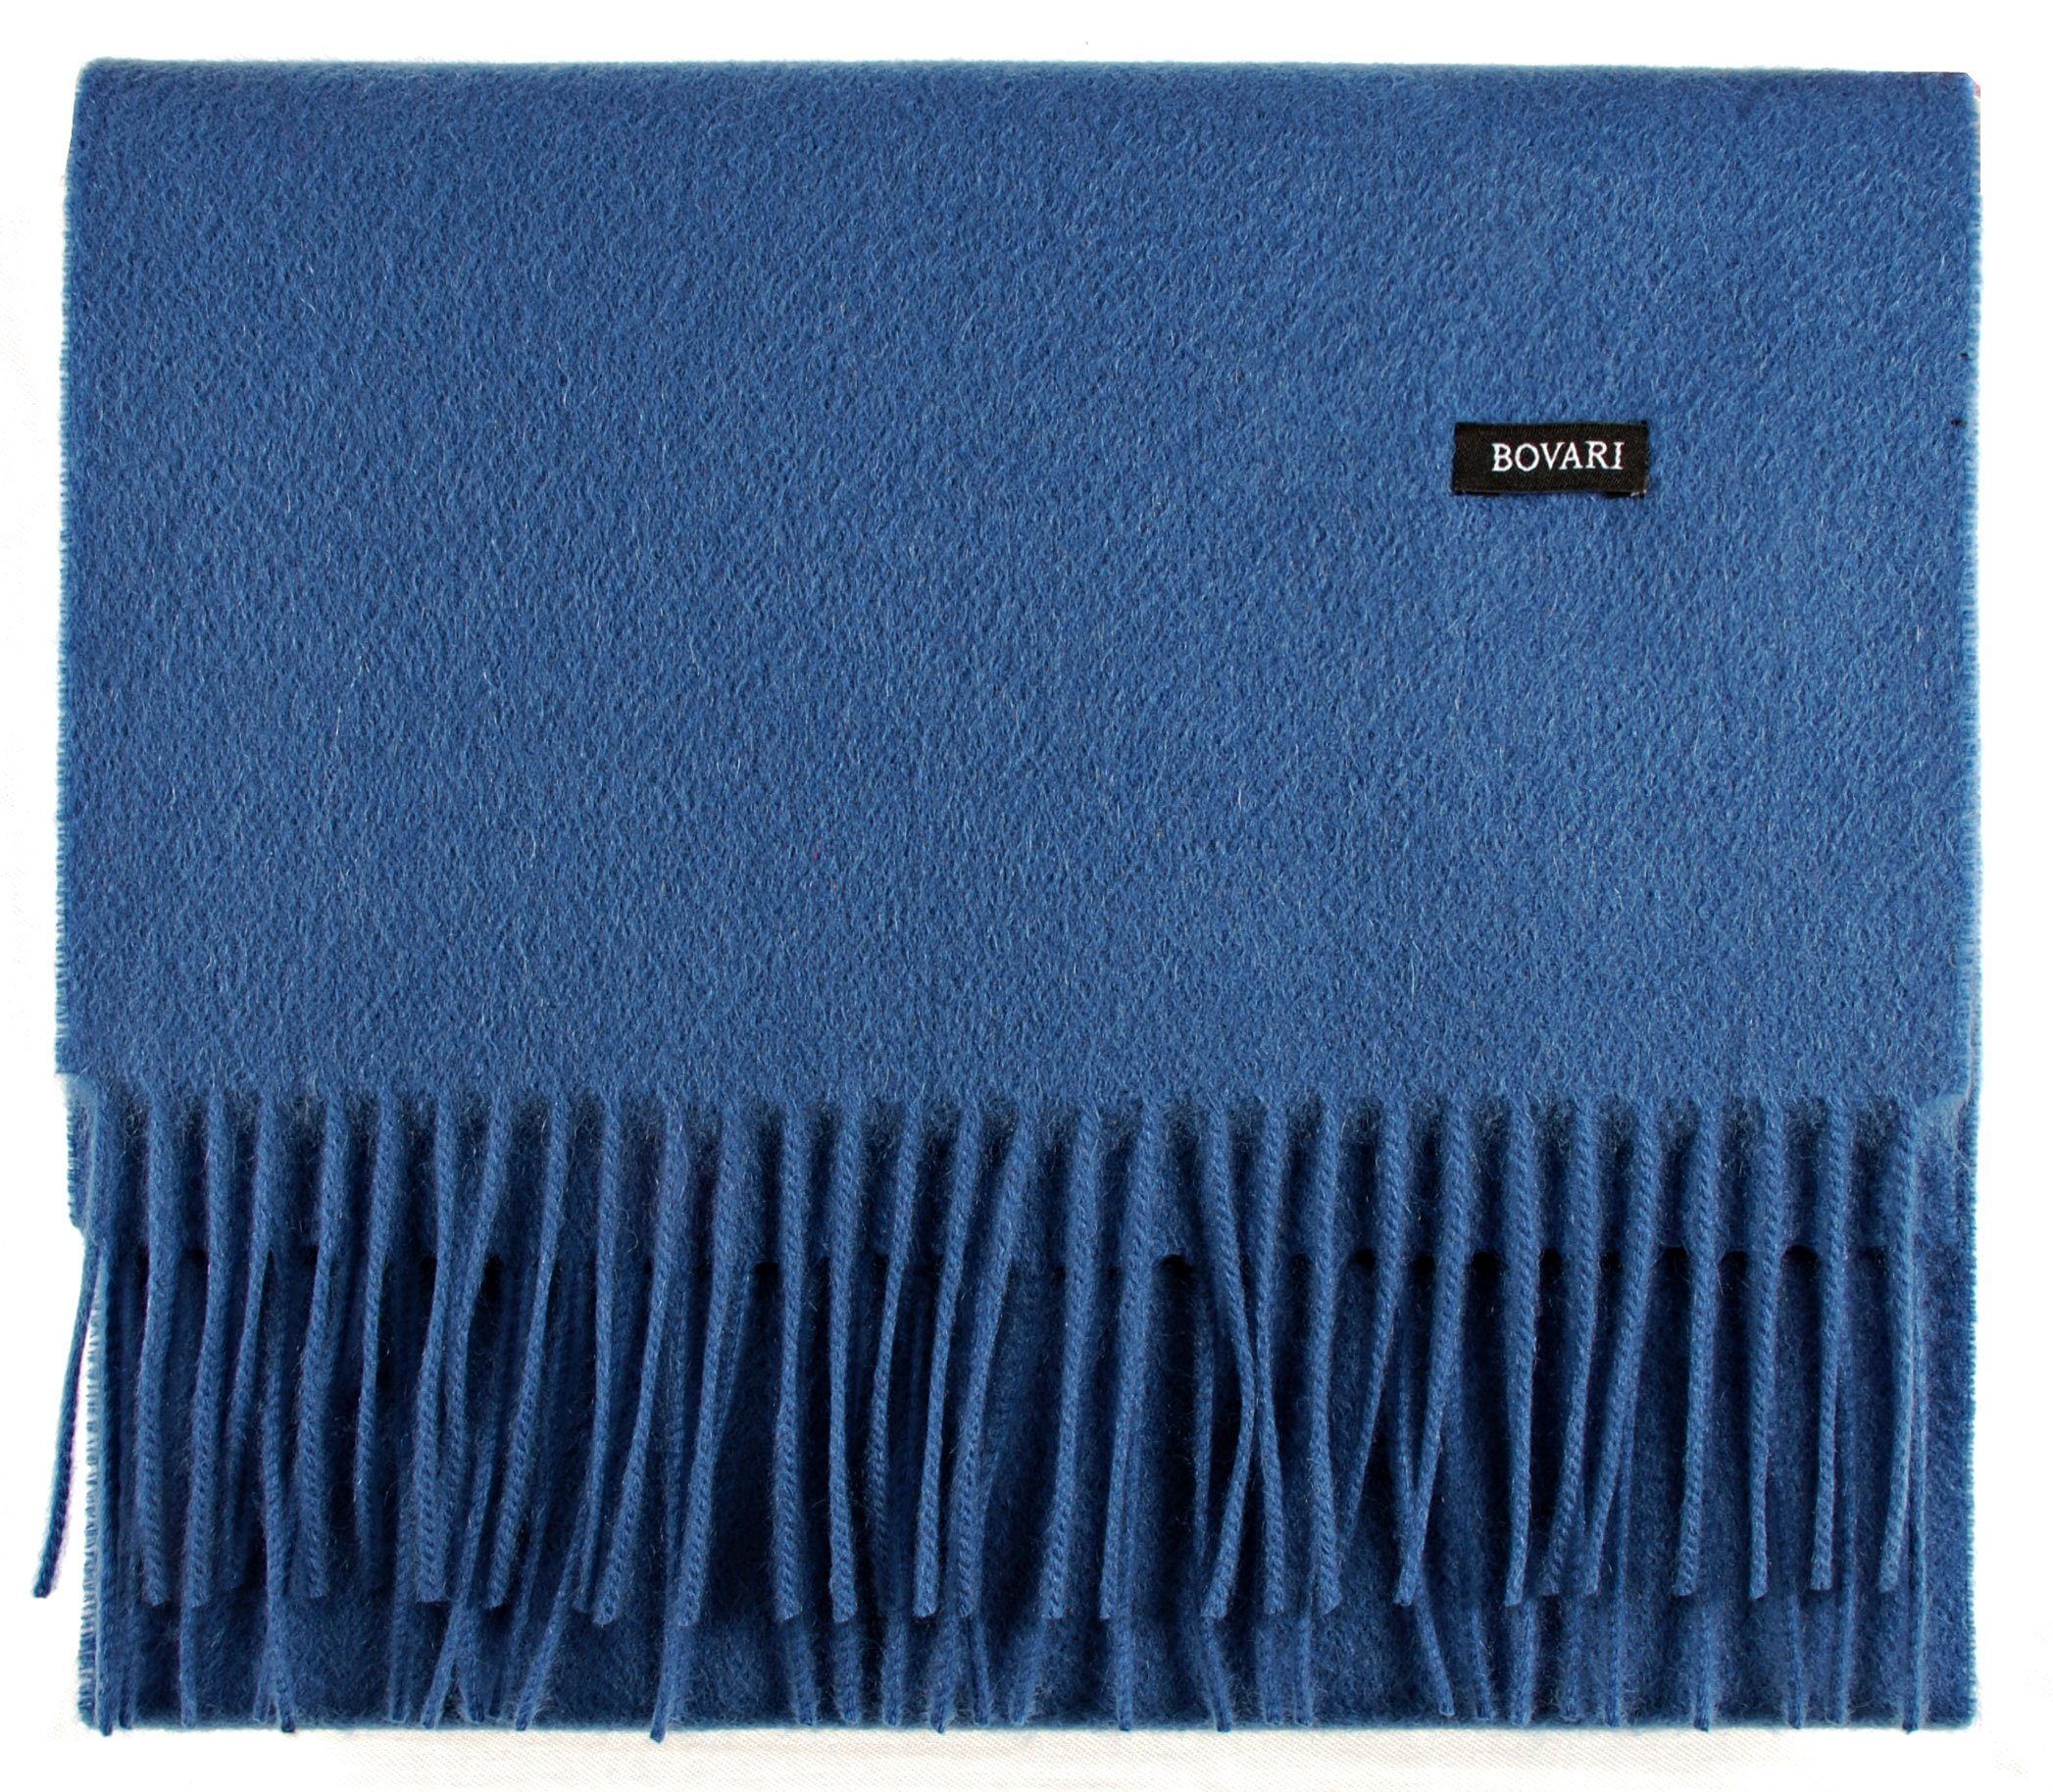 / Bovari cm Kaschmirschal 31 – Qualität, Premium blue / Kaschmir – x 100% 180 Kaschmir Cashmere Schal classic Herren blau